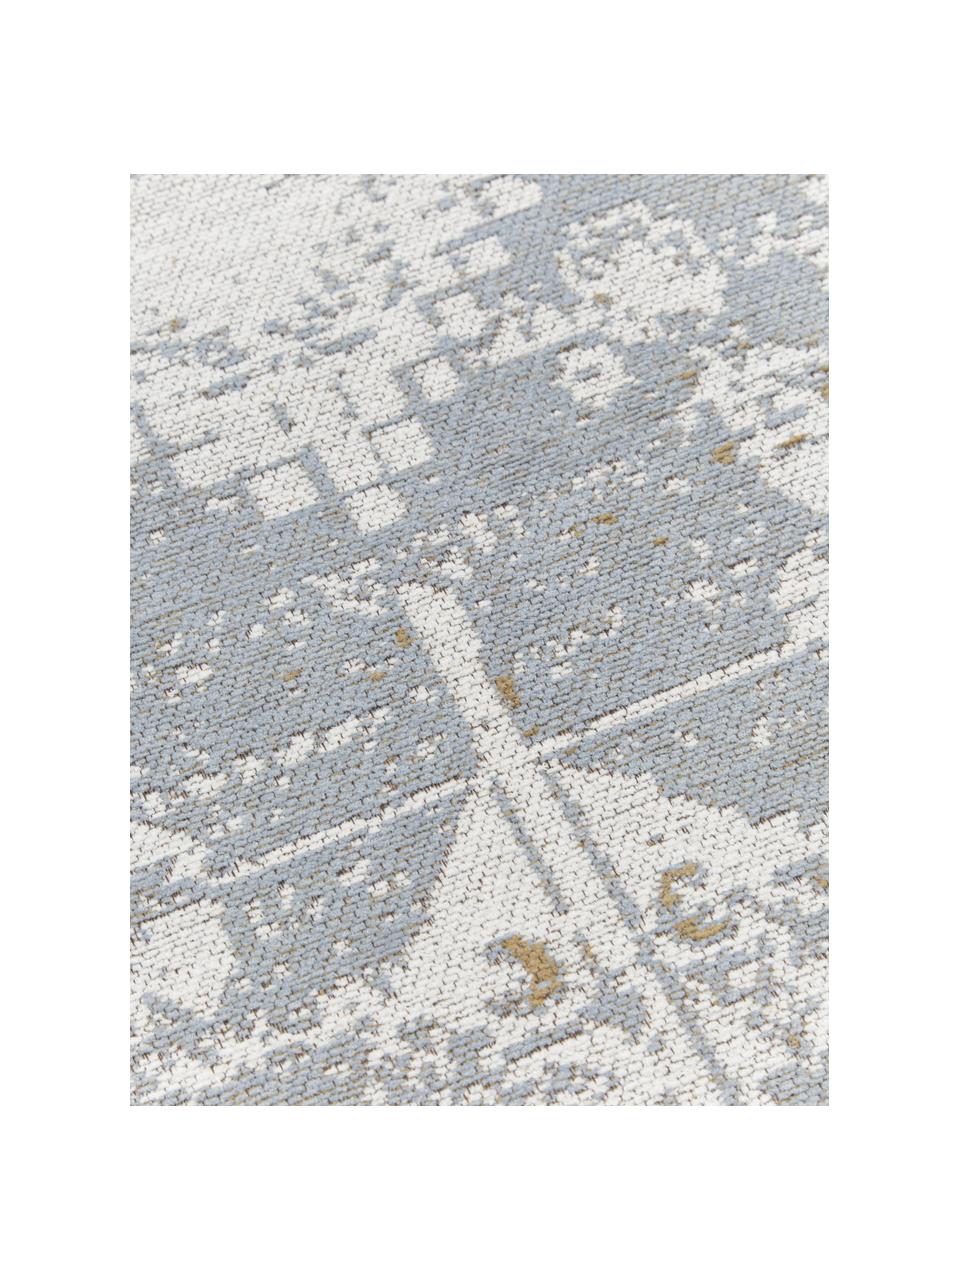 Okrągły ręcznie tkany dywan szenilowy Neapel, Szaroniebieski, kremowobiały, taupe, Ø 120 cm (Rozmiar S)